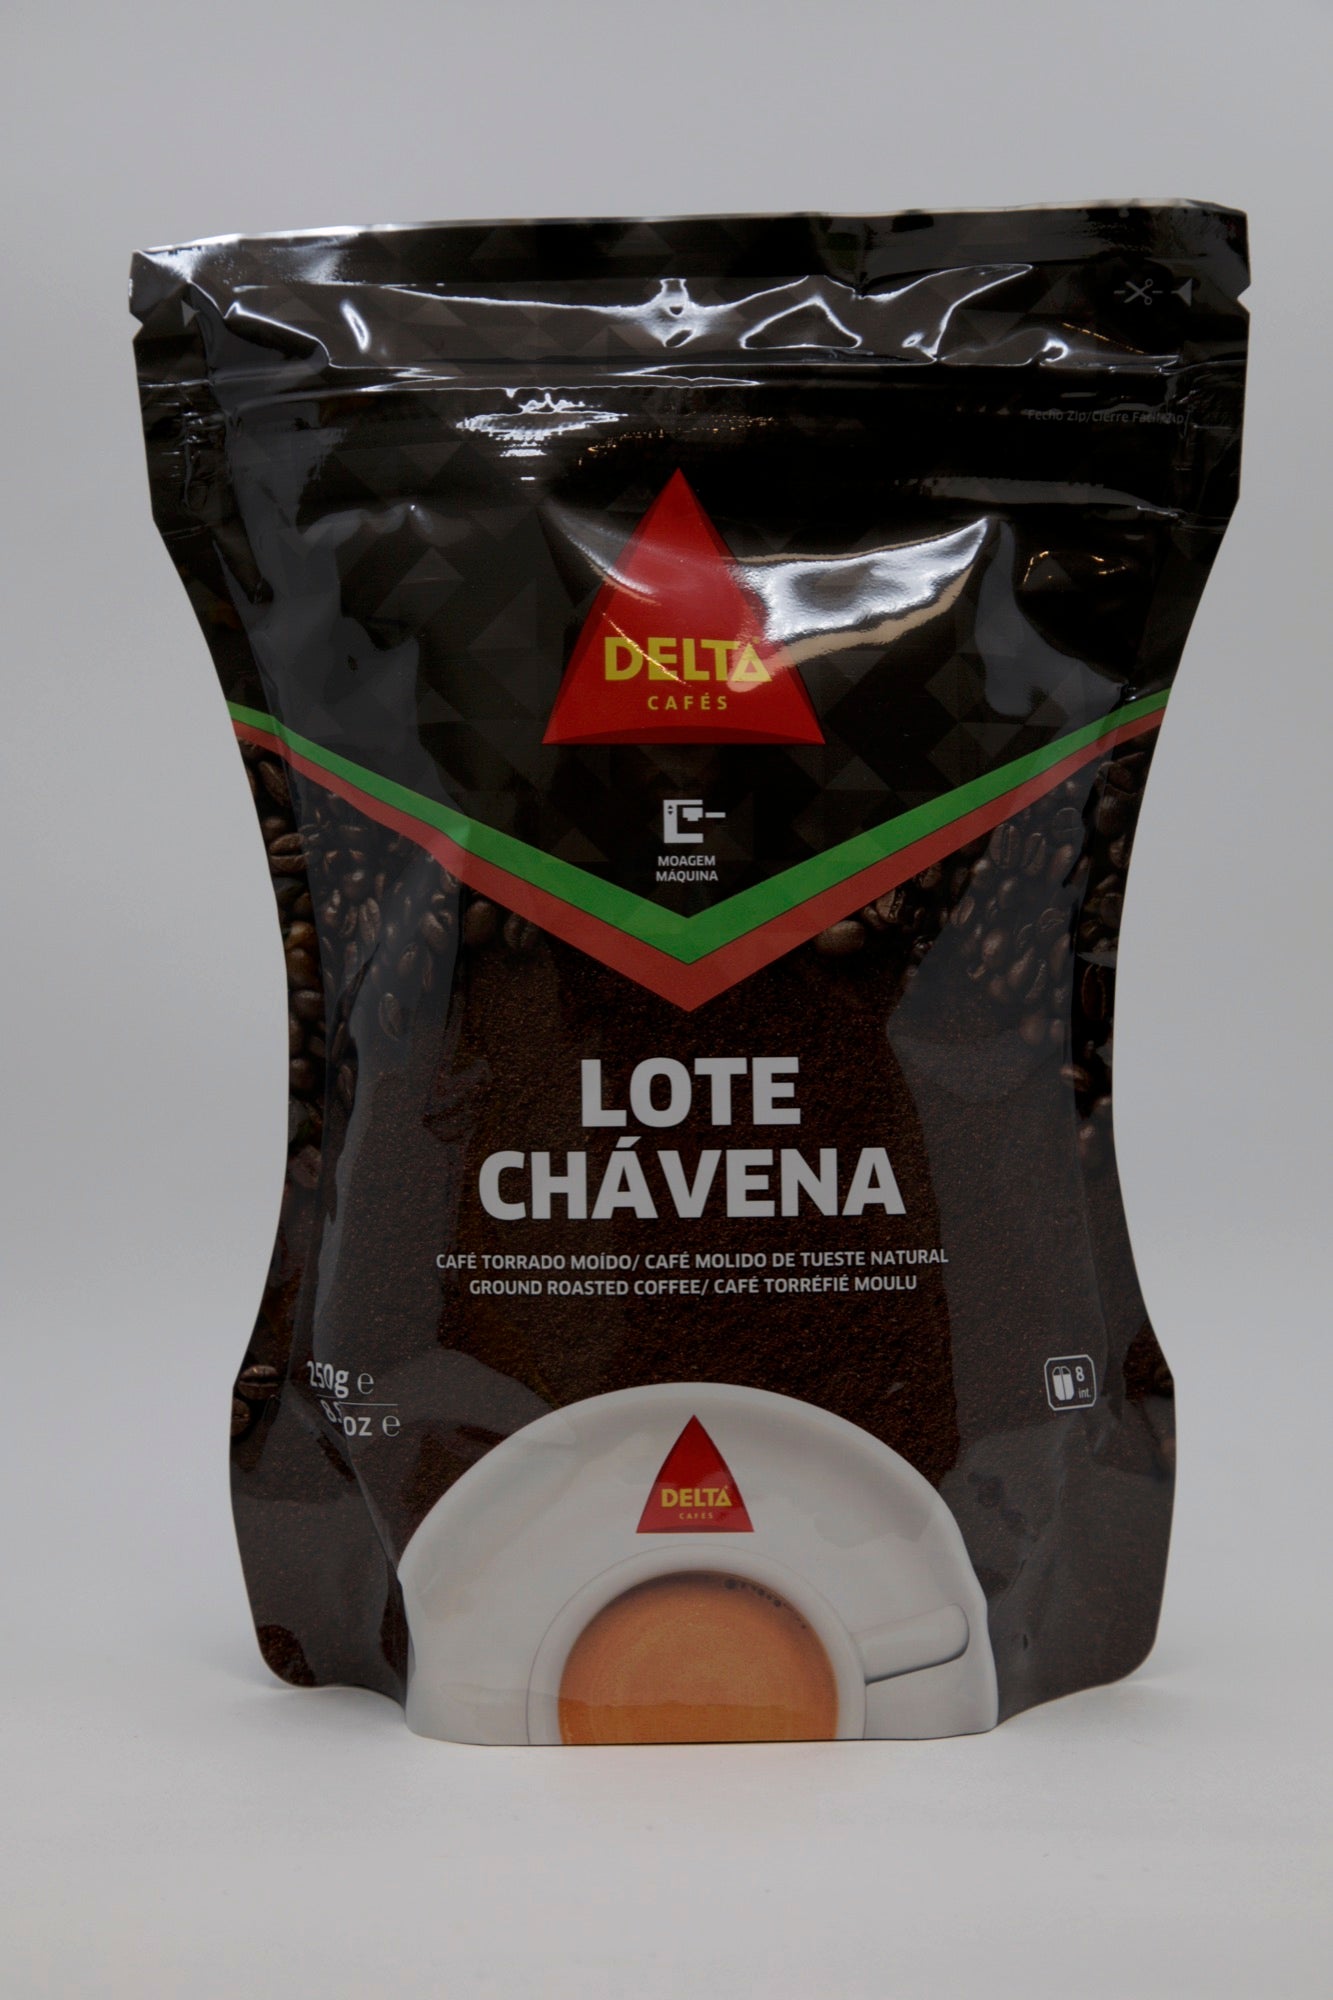 CAFÉ GRÃO LOTE CHÁVENA DELTA 1KG - COFFEES AND TEAS - GROCERIES - Products